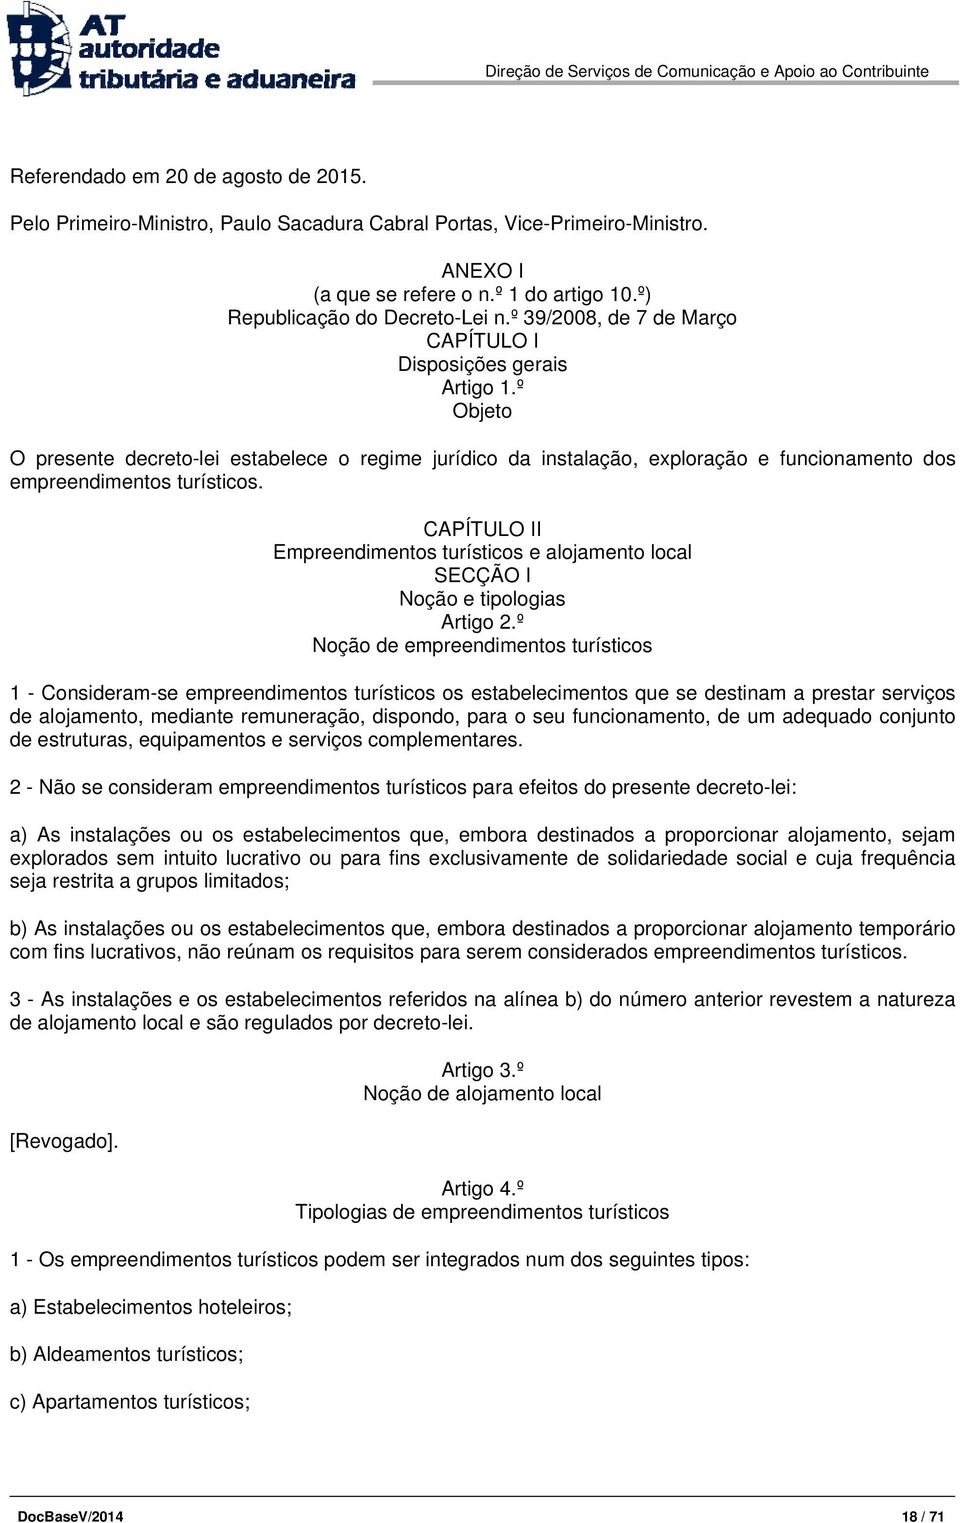 CAPÍTULO II Empreendimentos turísticos e alojamento local SECÇÃO I Noção e tipologias Artigo 2.